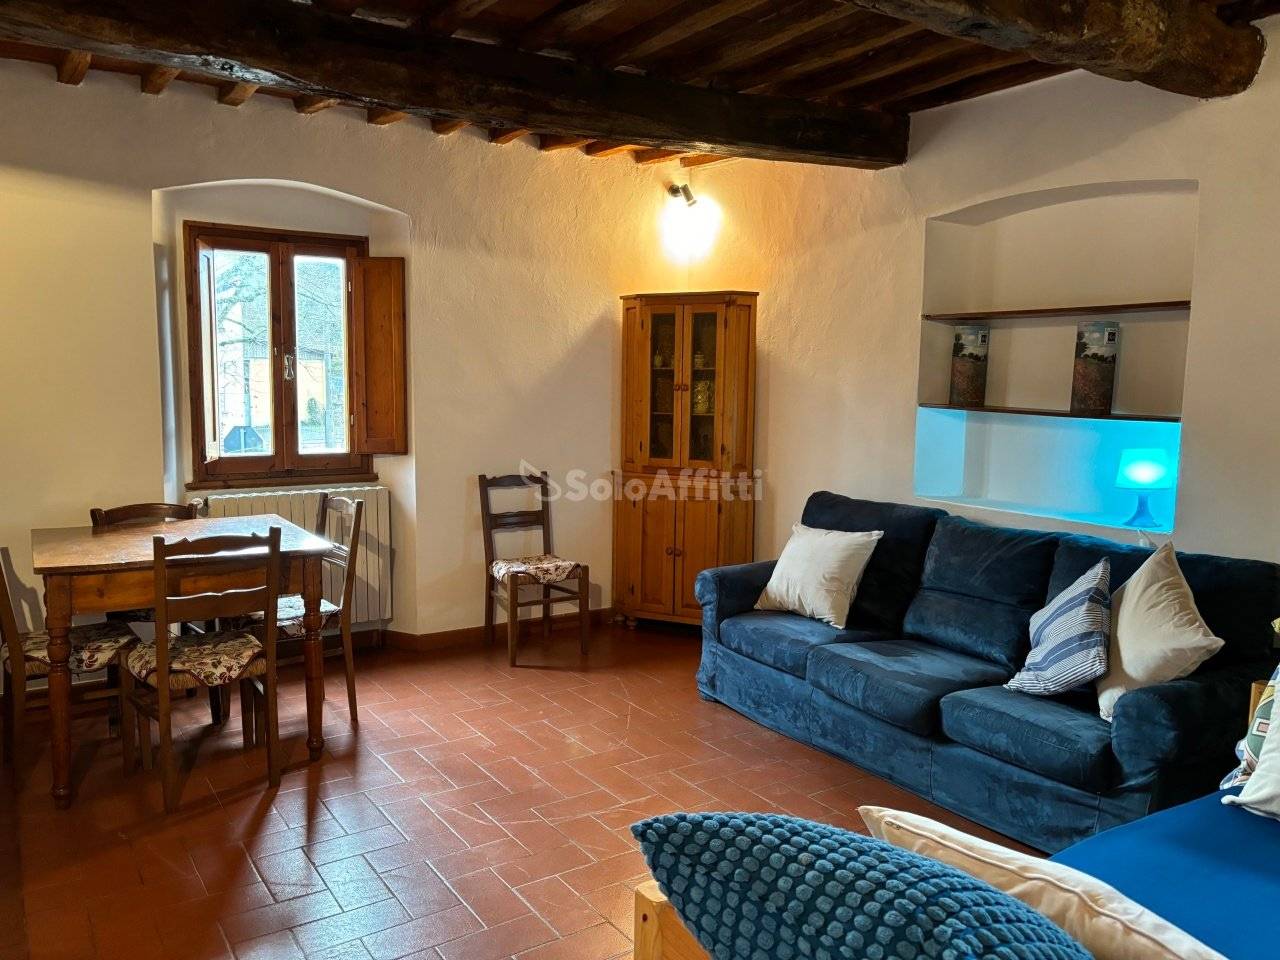 Affitto Appartamento Rignano sull'Arno. Trilocale in via Fiorentina 305.  Ottimo stato, primo piano, riscaldamento autonomo, rif. 108033781